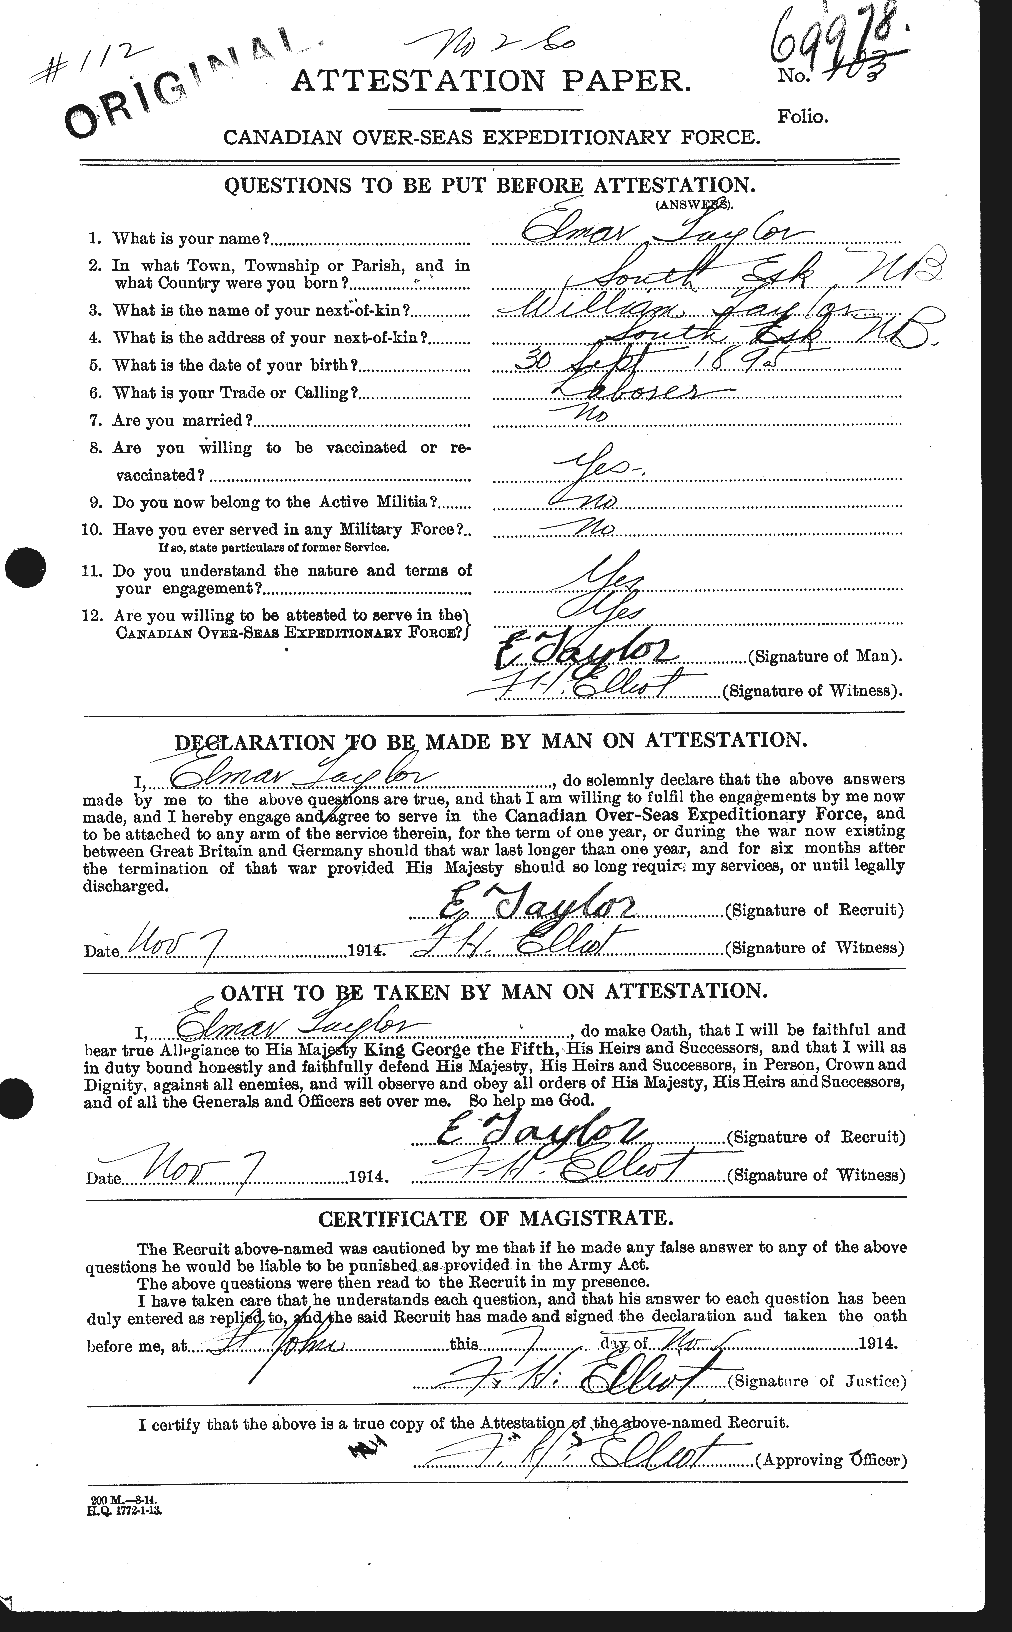 Dossiers du Personnel de la Première Guerre mondiale - CEC 627351a